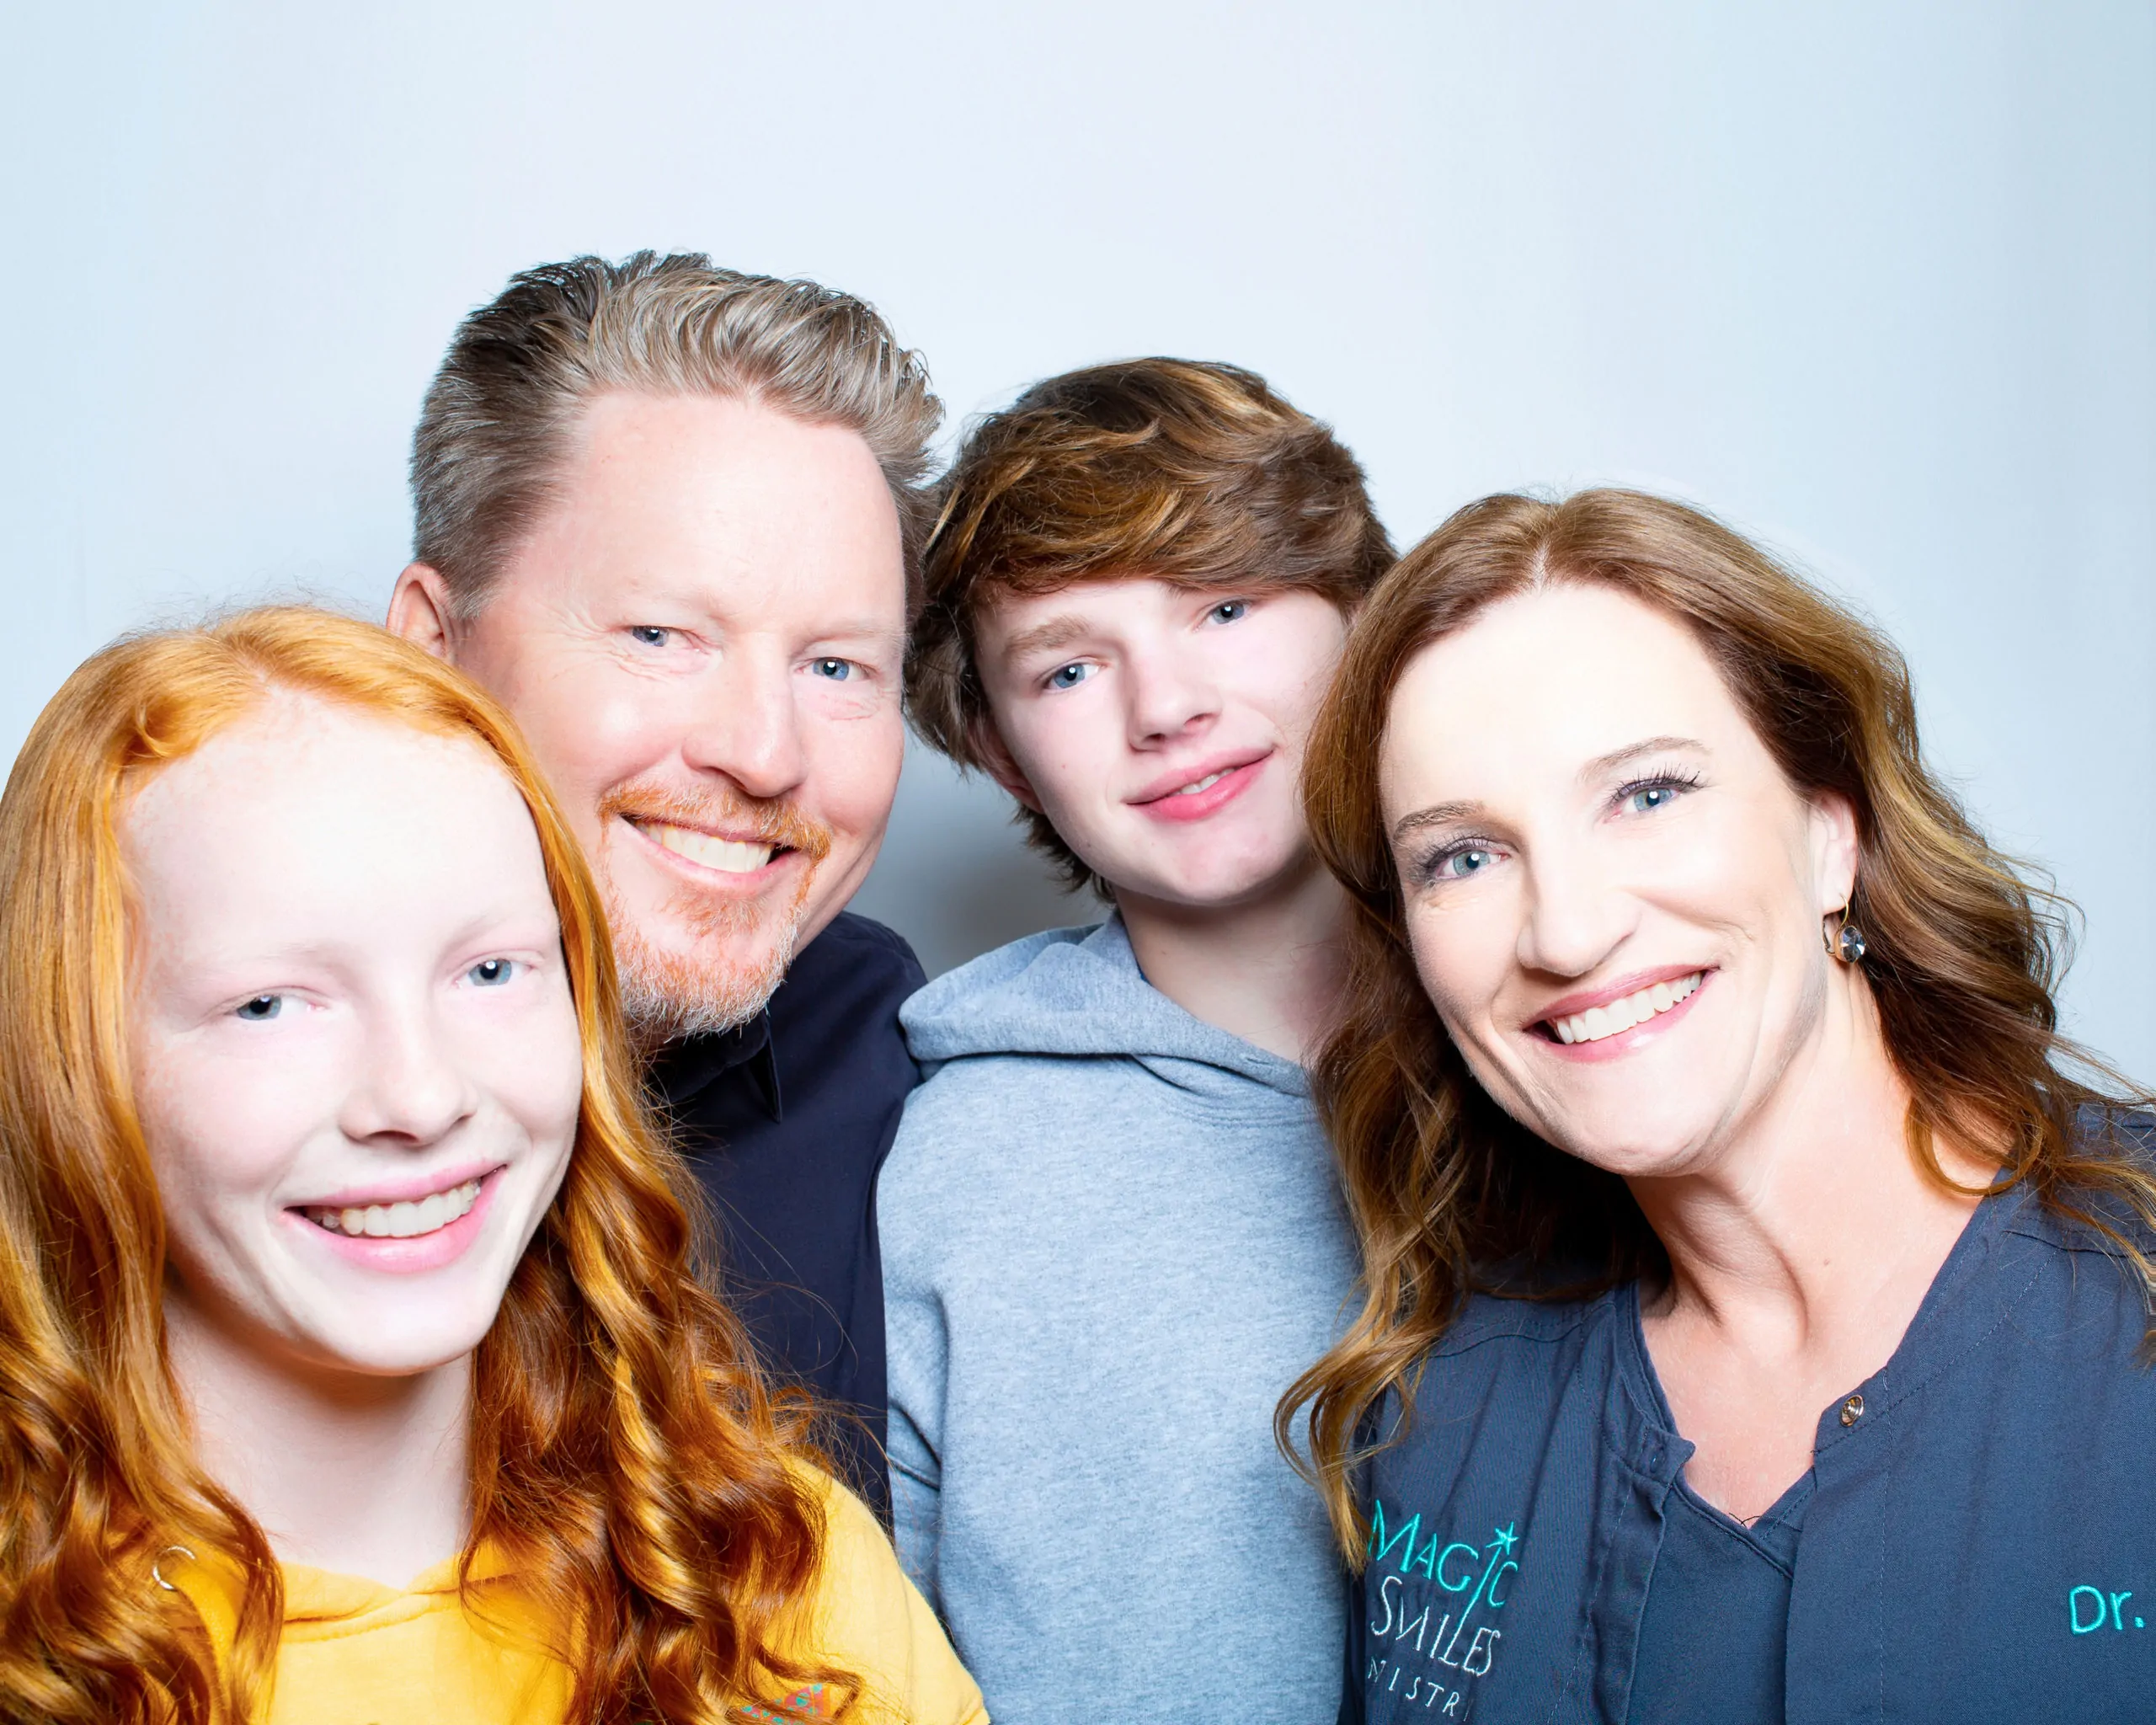 magic smiles dentistry family - Meet Dr. Jen Datwyler